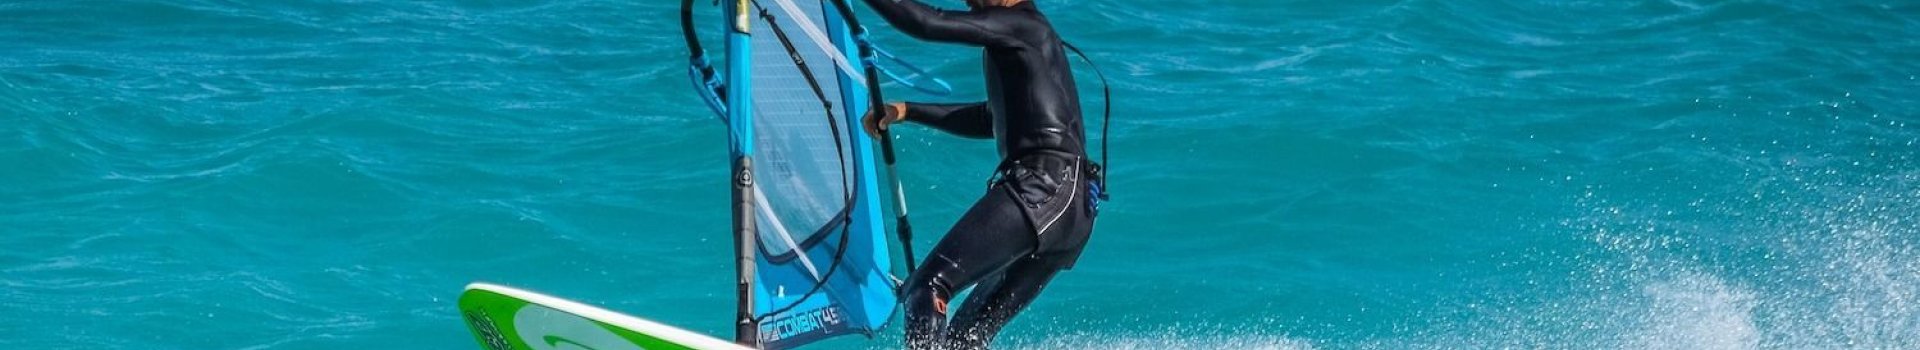 Pianka windsurfingowa, która spełni Twoje oczekiwania